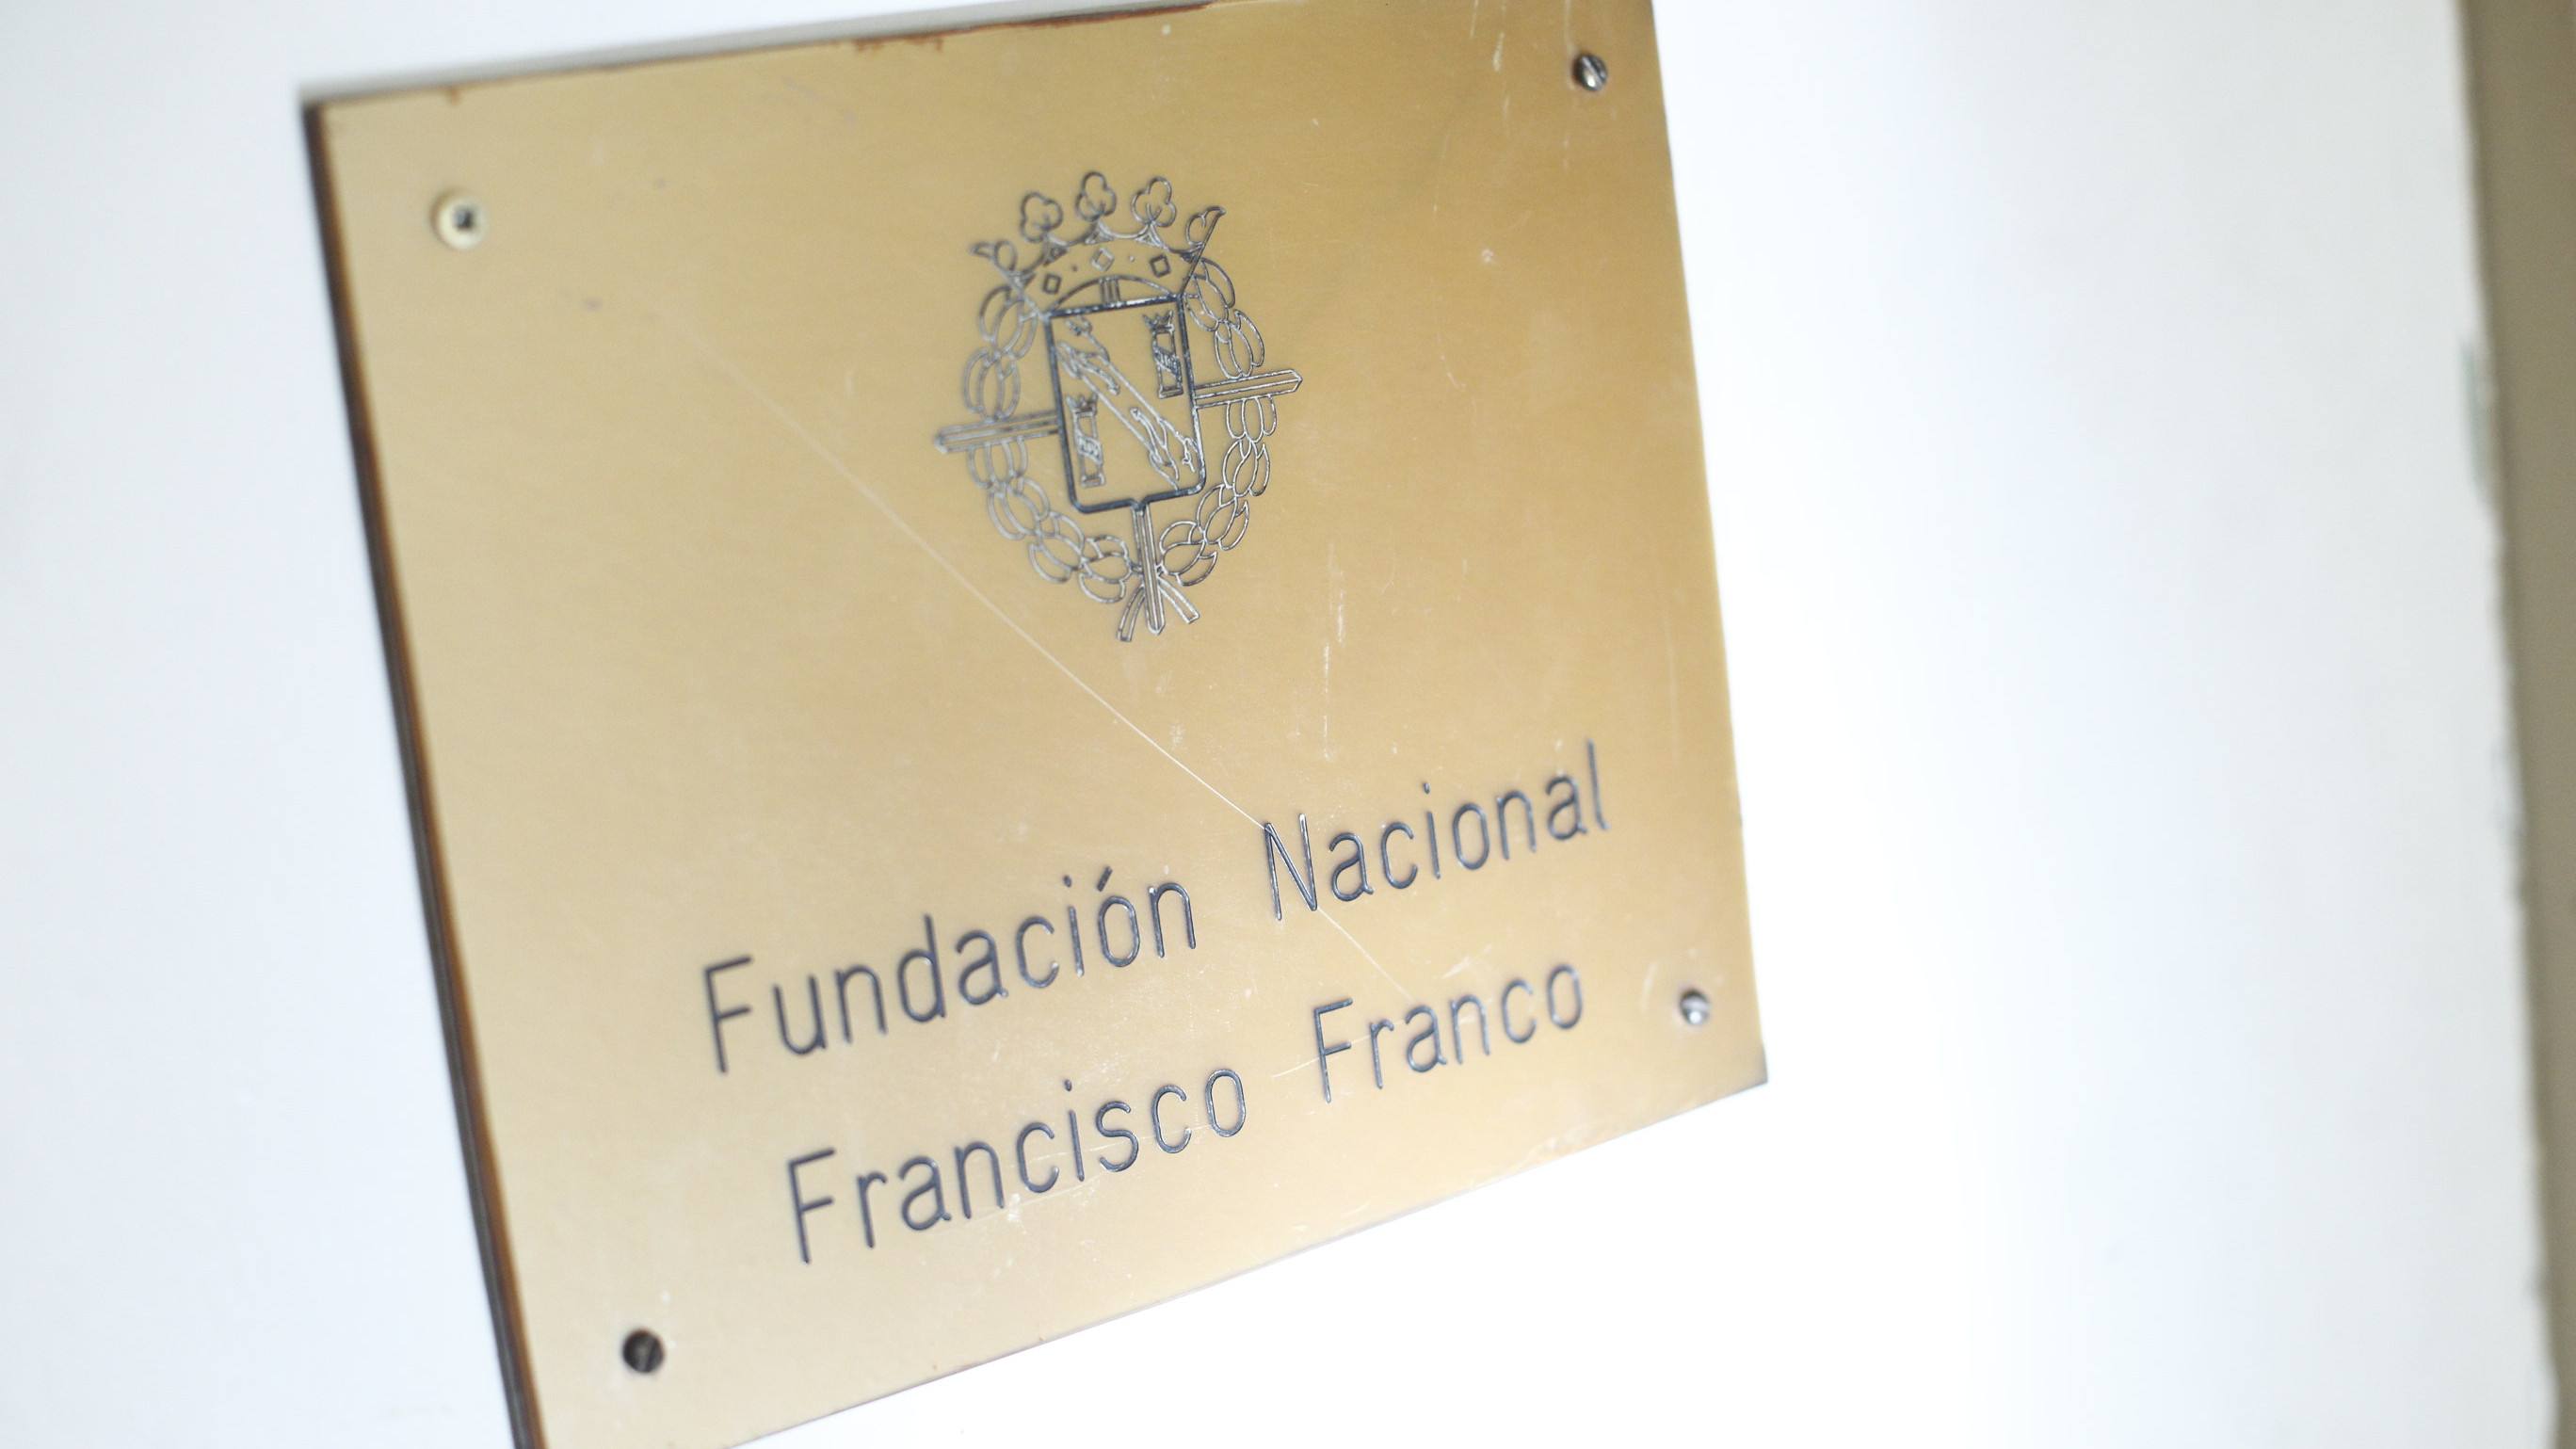 La Fundación Francisco Franco seguirá defendiéndole pese a la Ley de Memoria Democrática